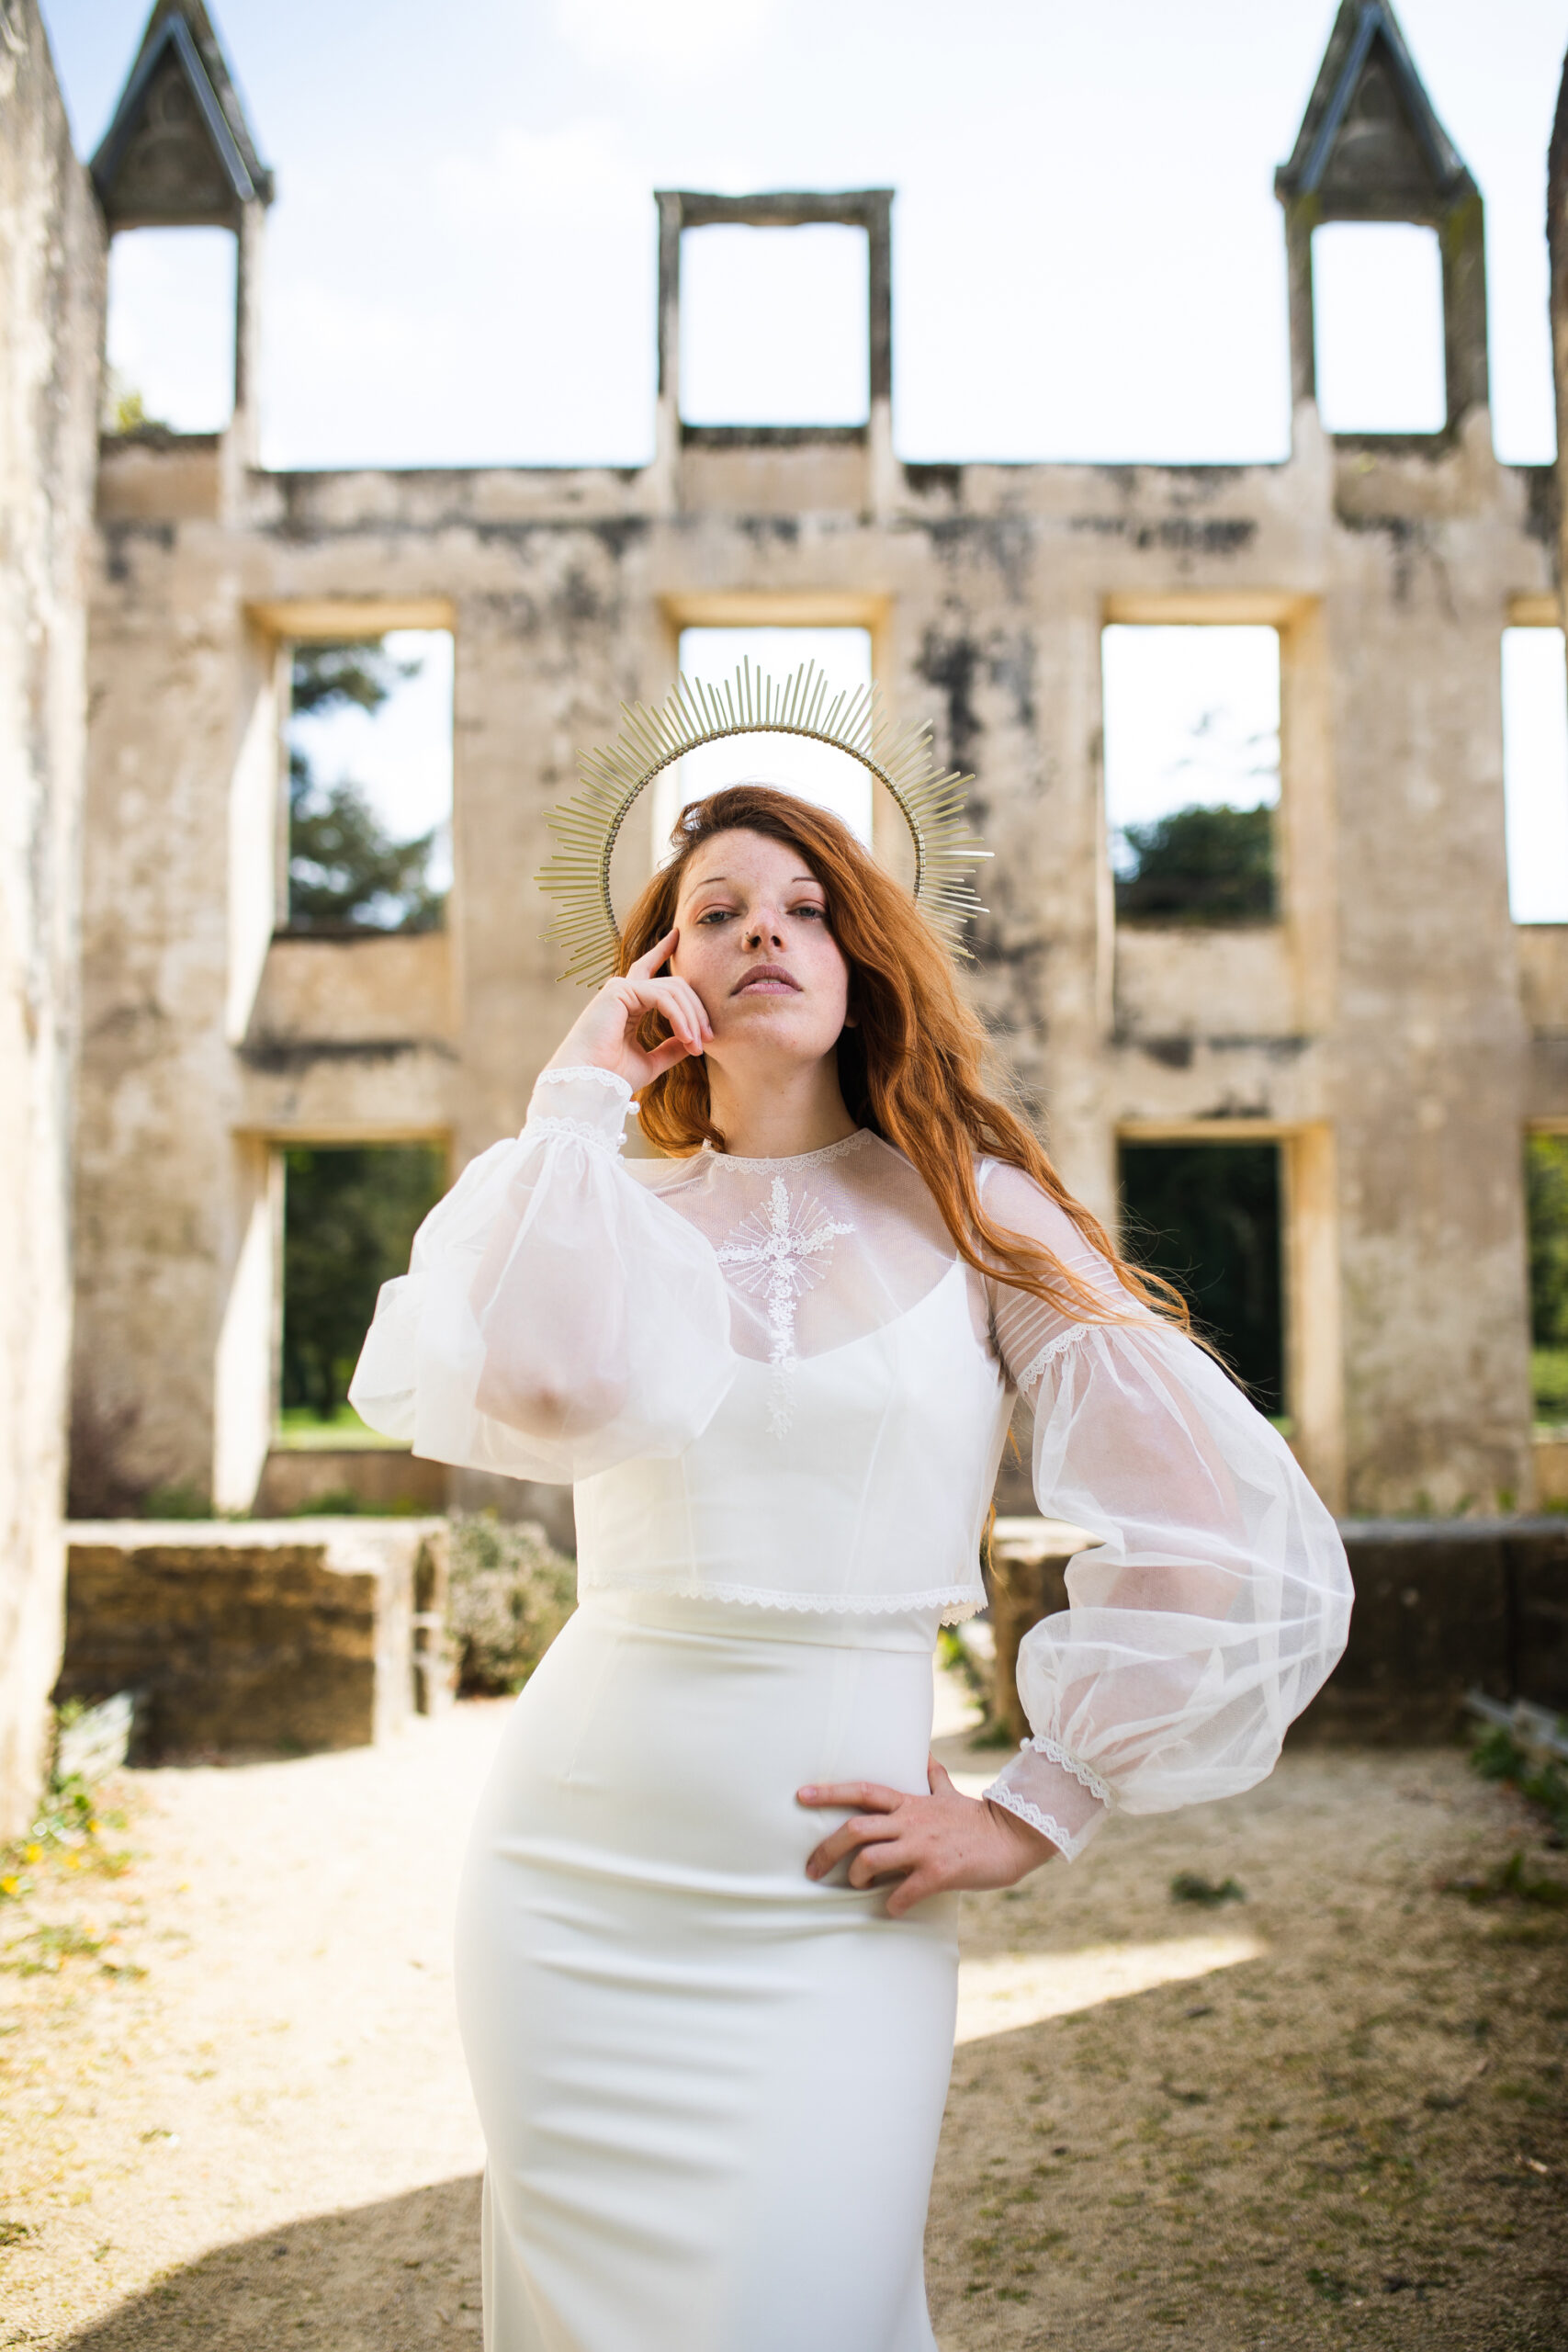 Femme portant une robe de mariée dans un château en ruine.